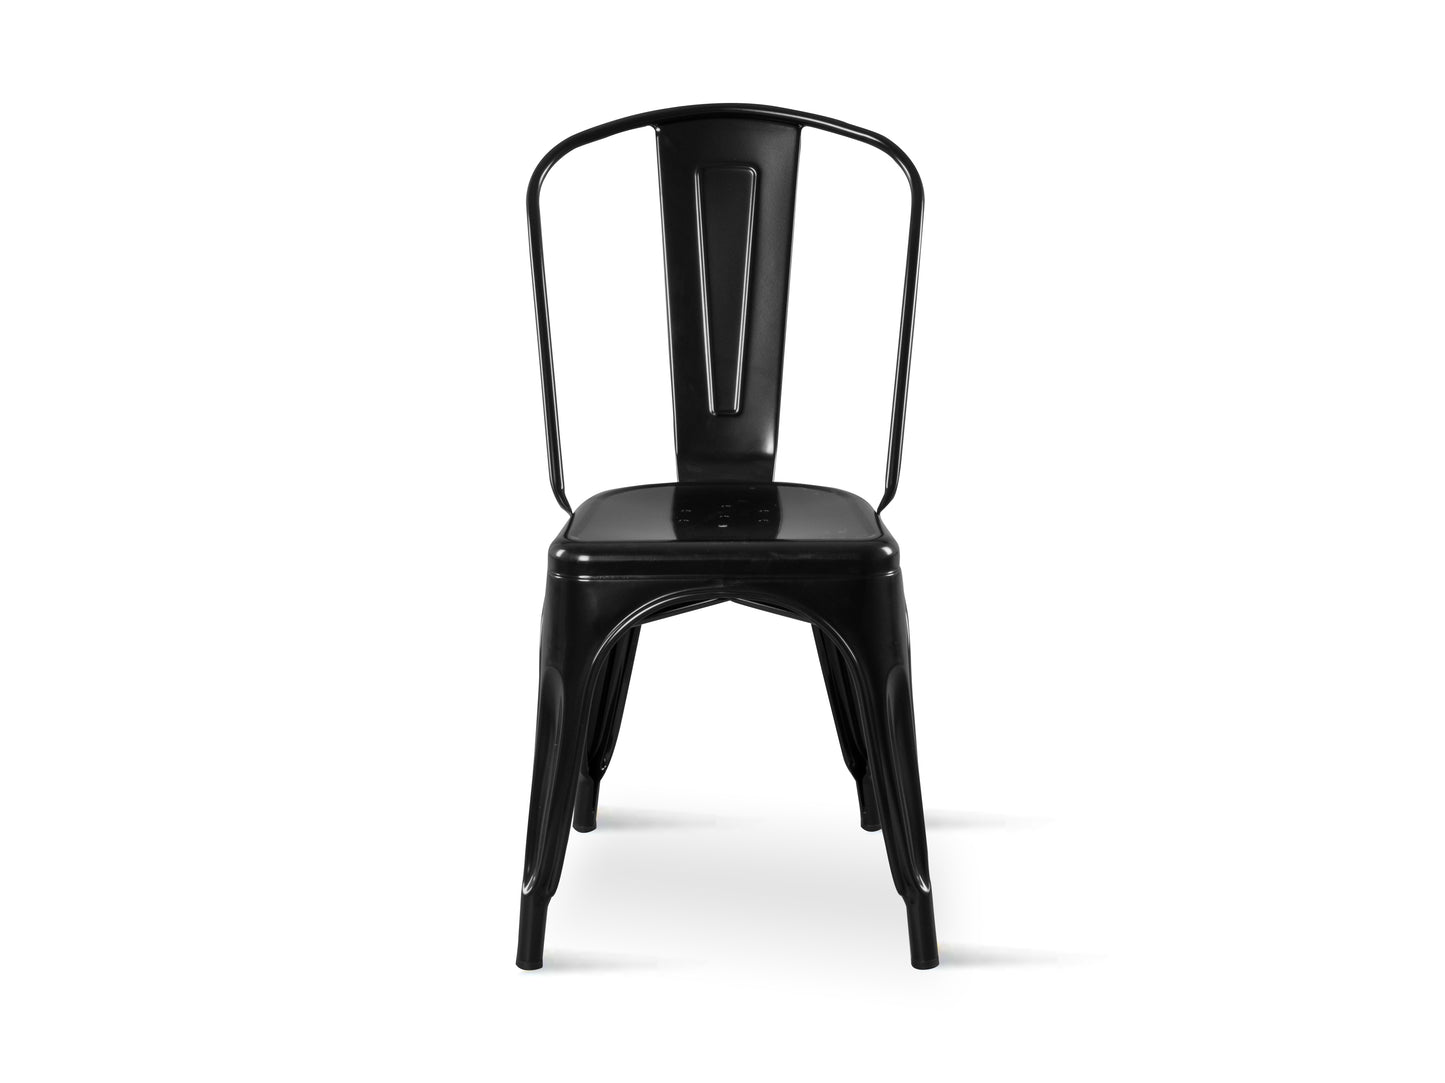 Chaise en métal noir style industriel - Aspect brillant